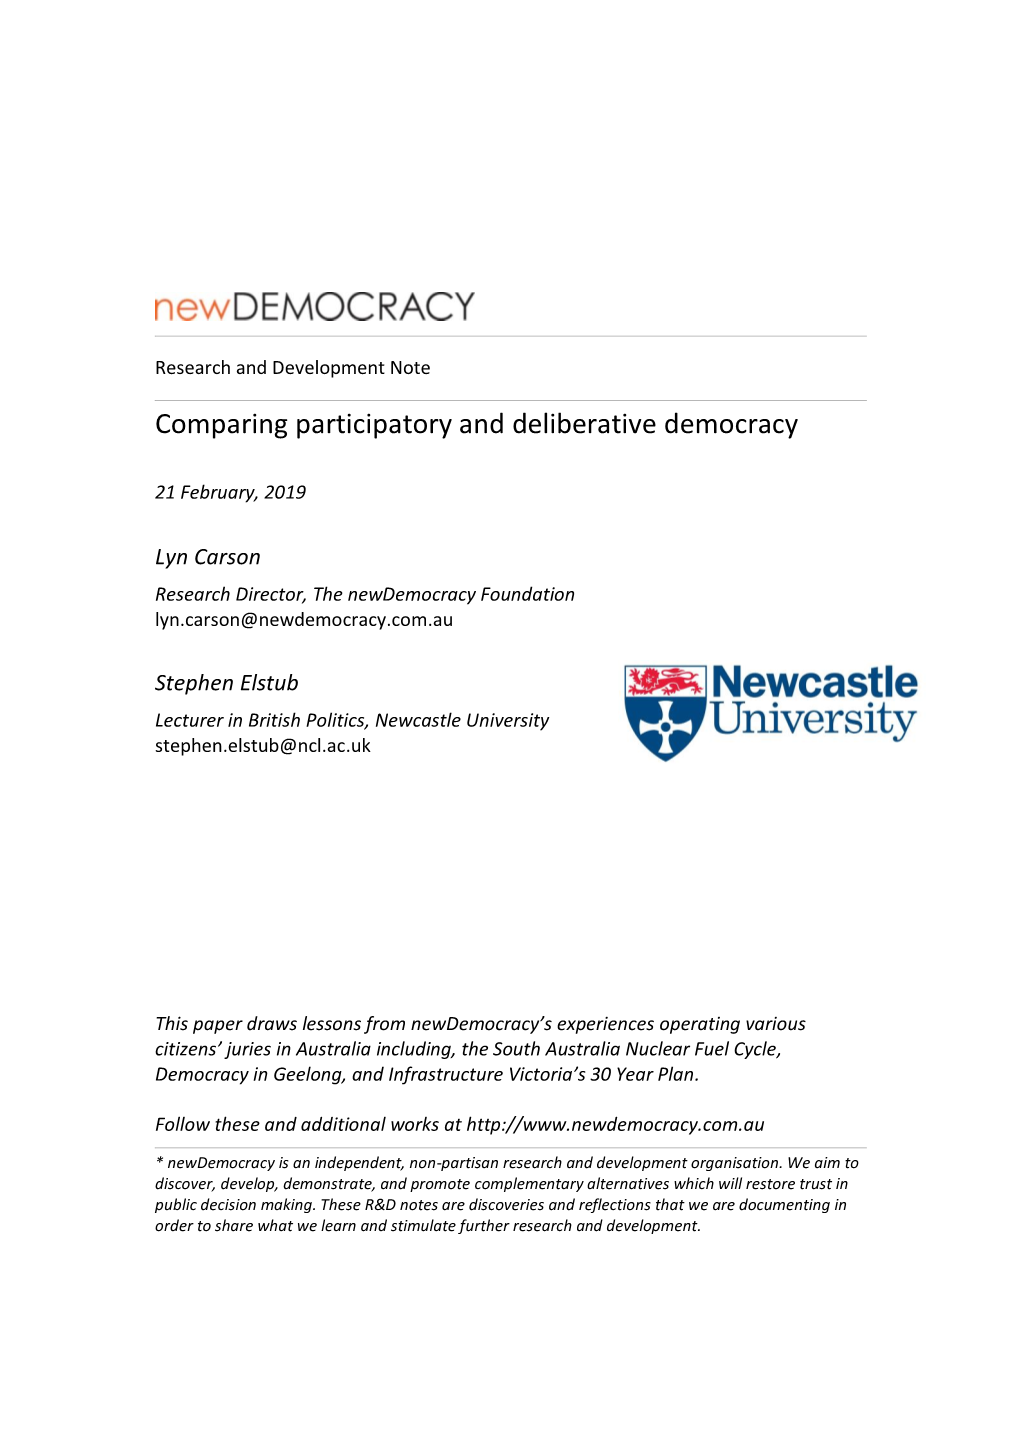 Comparing Participatory and Deliberative Democracy